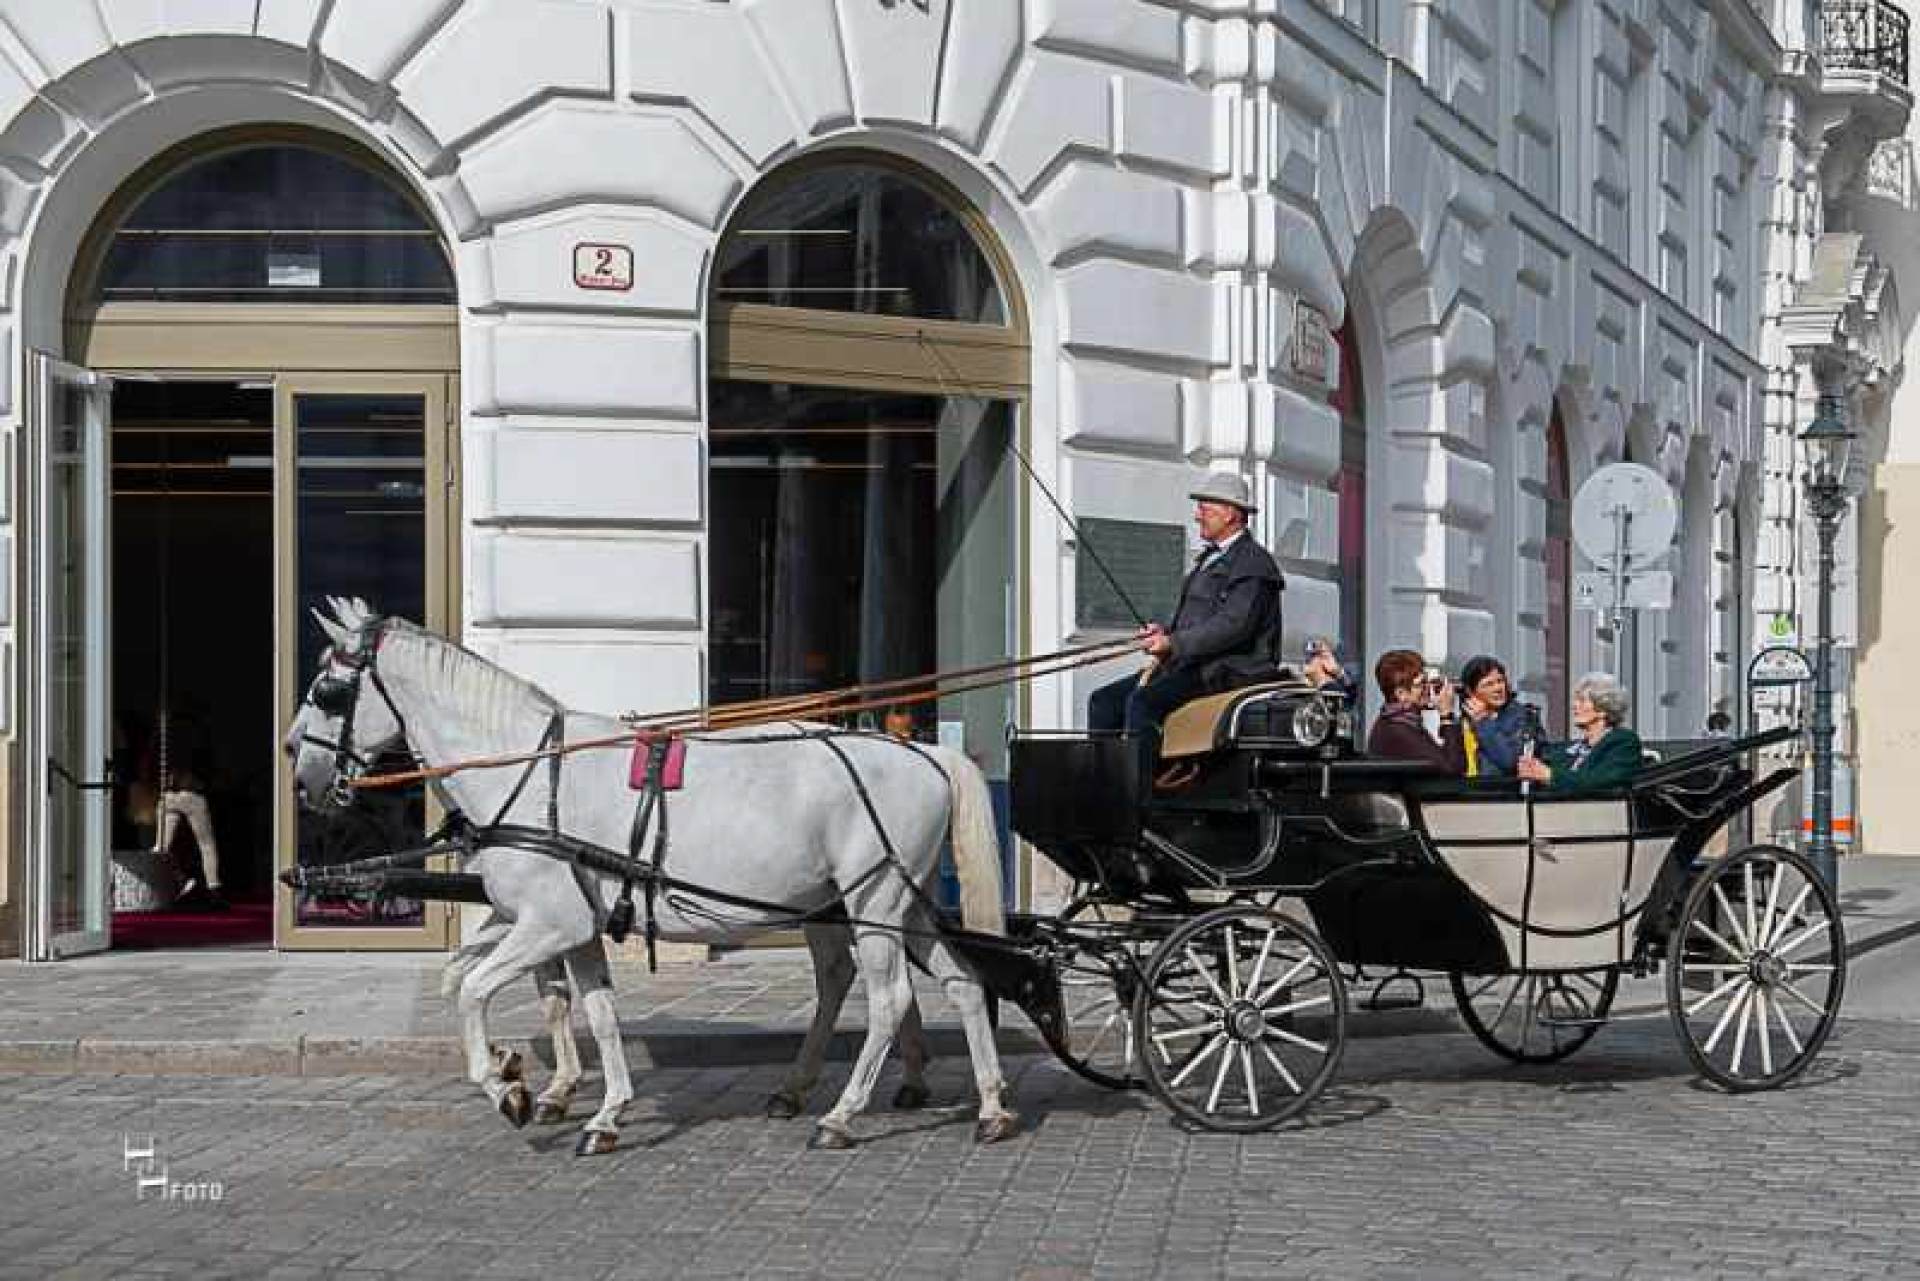 Поездка в карете, запряженной лошадьми, в Вене